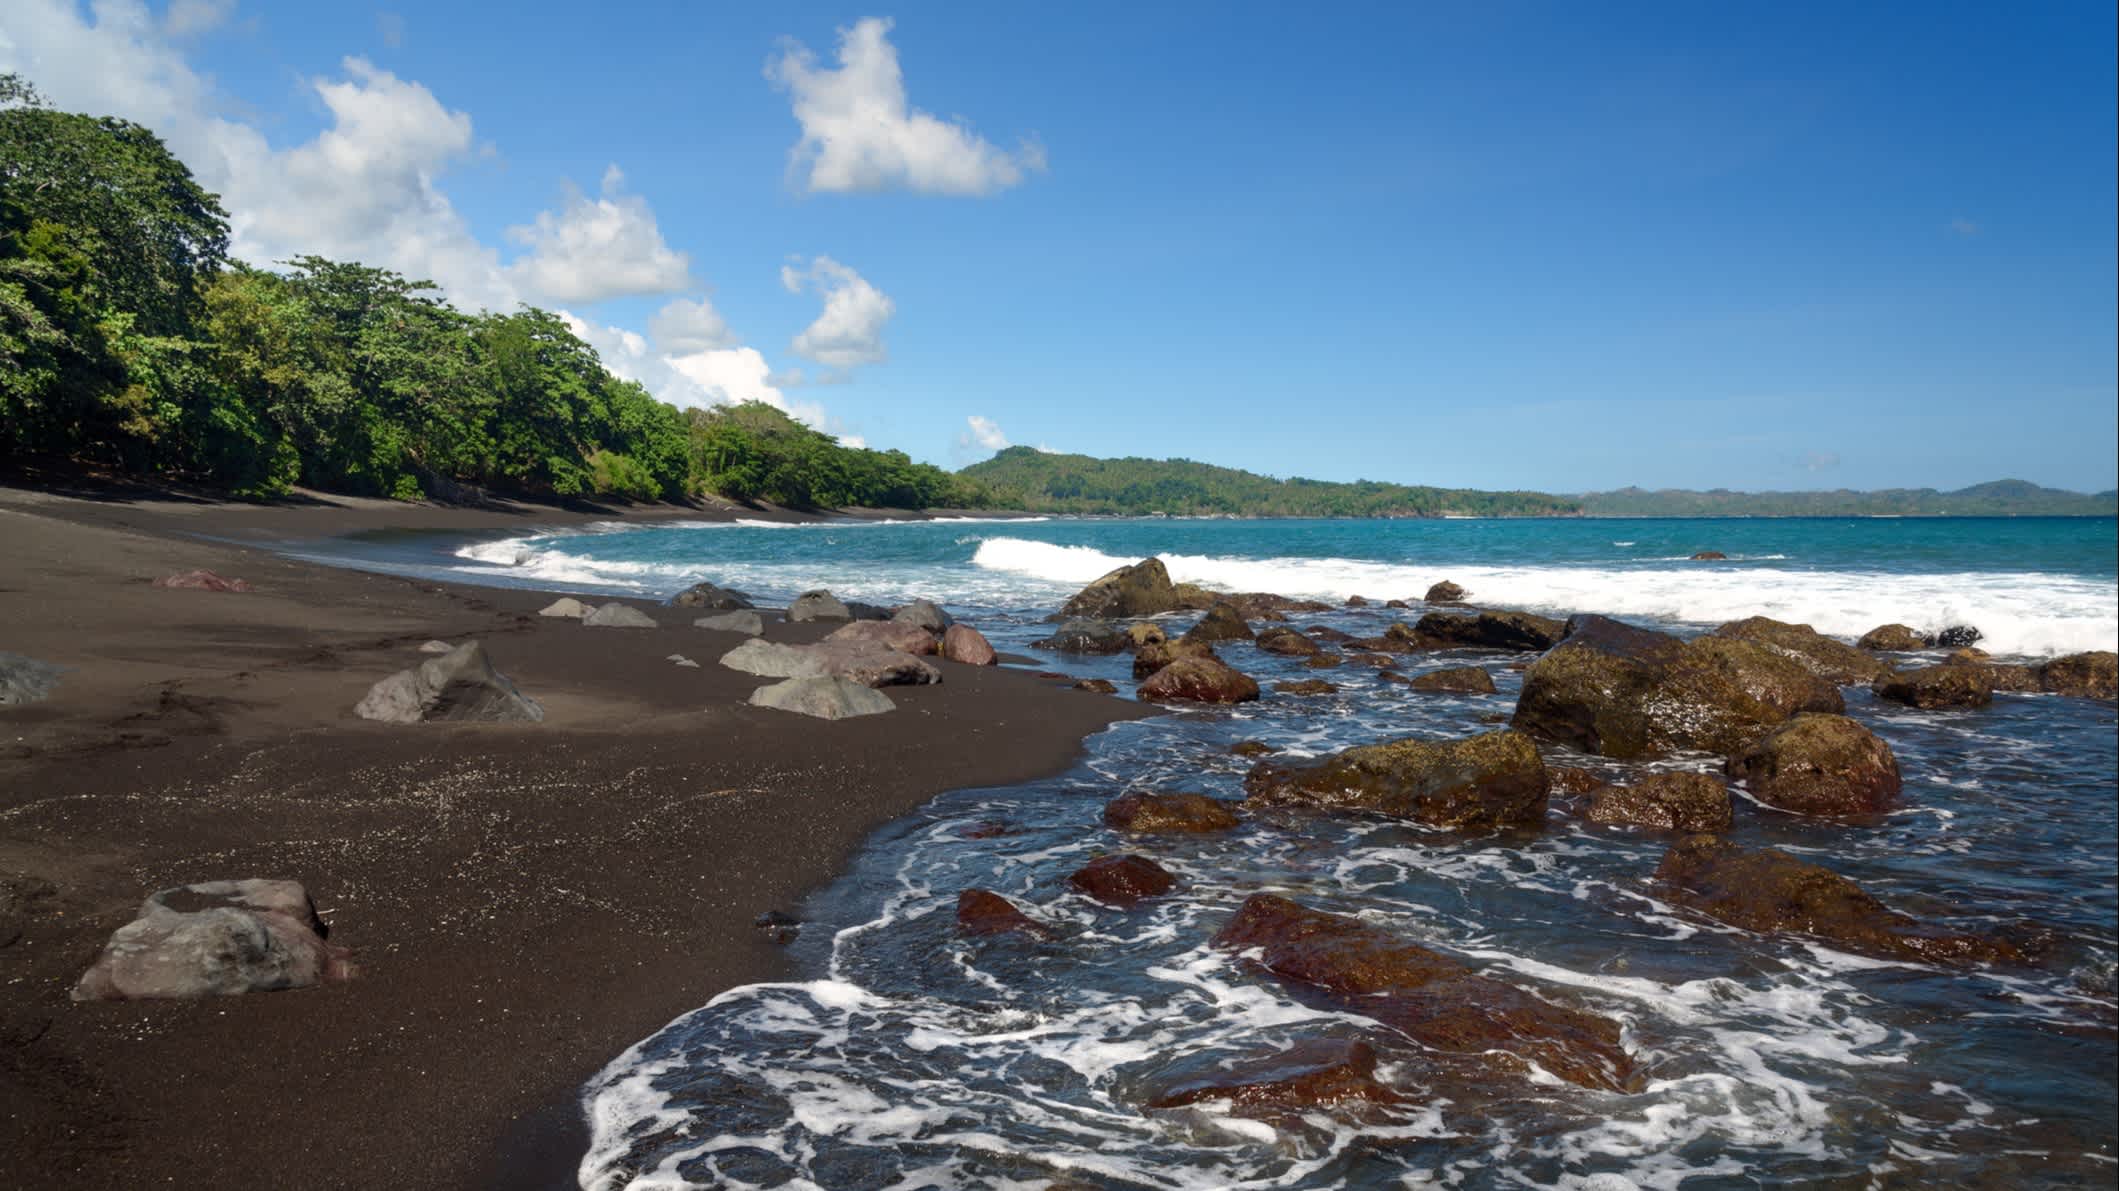 Blick auf den vulkanischen Strand mit schwarzem Sand.